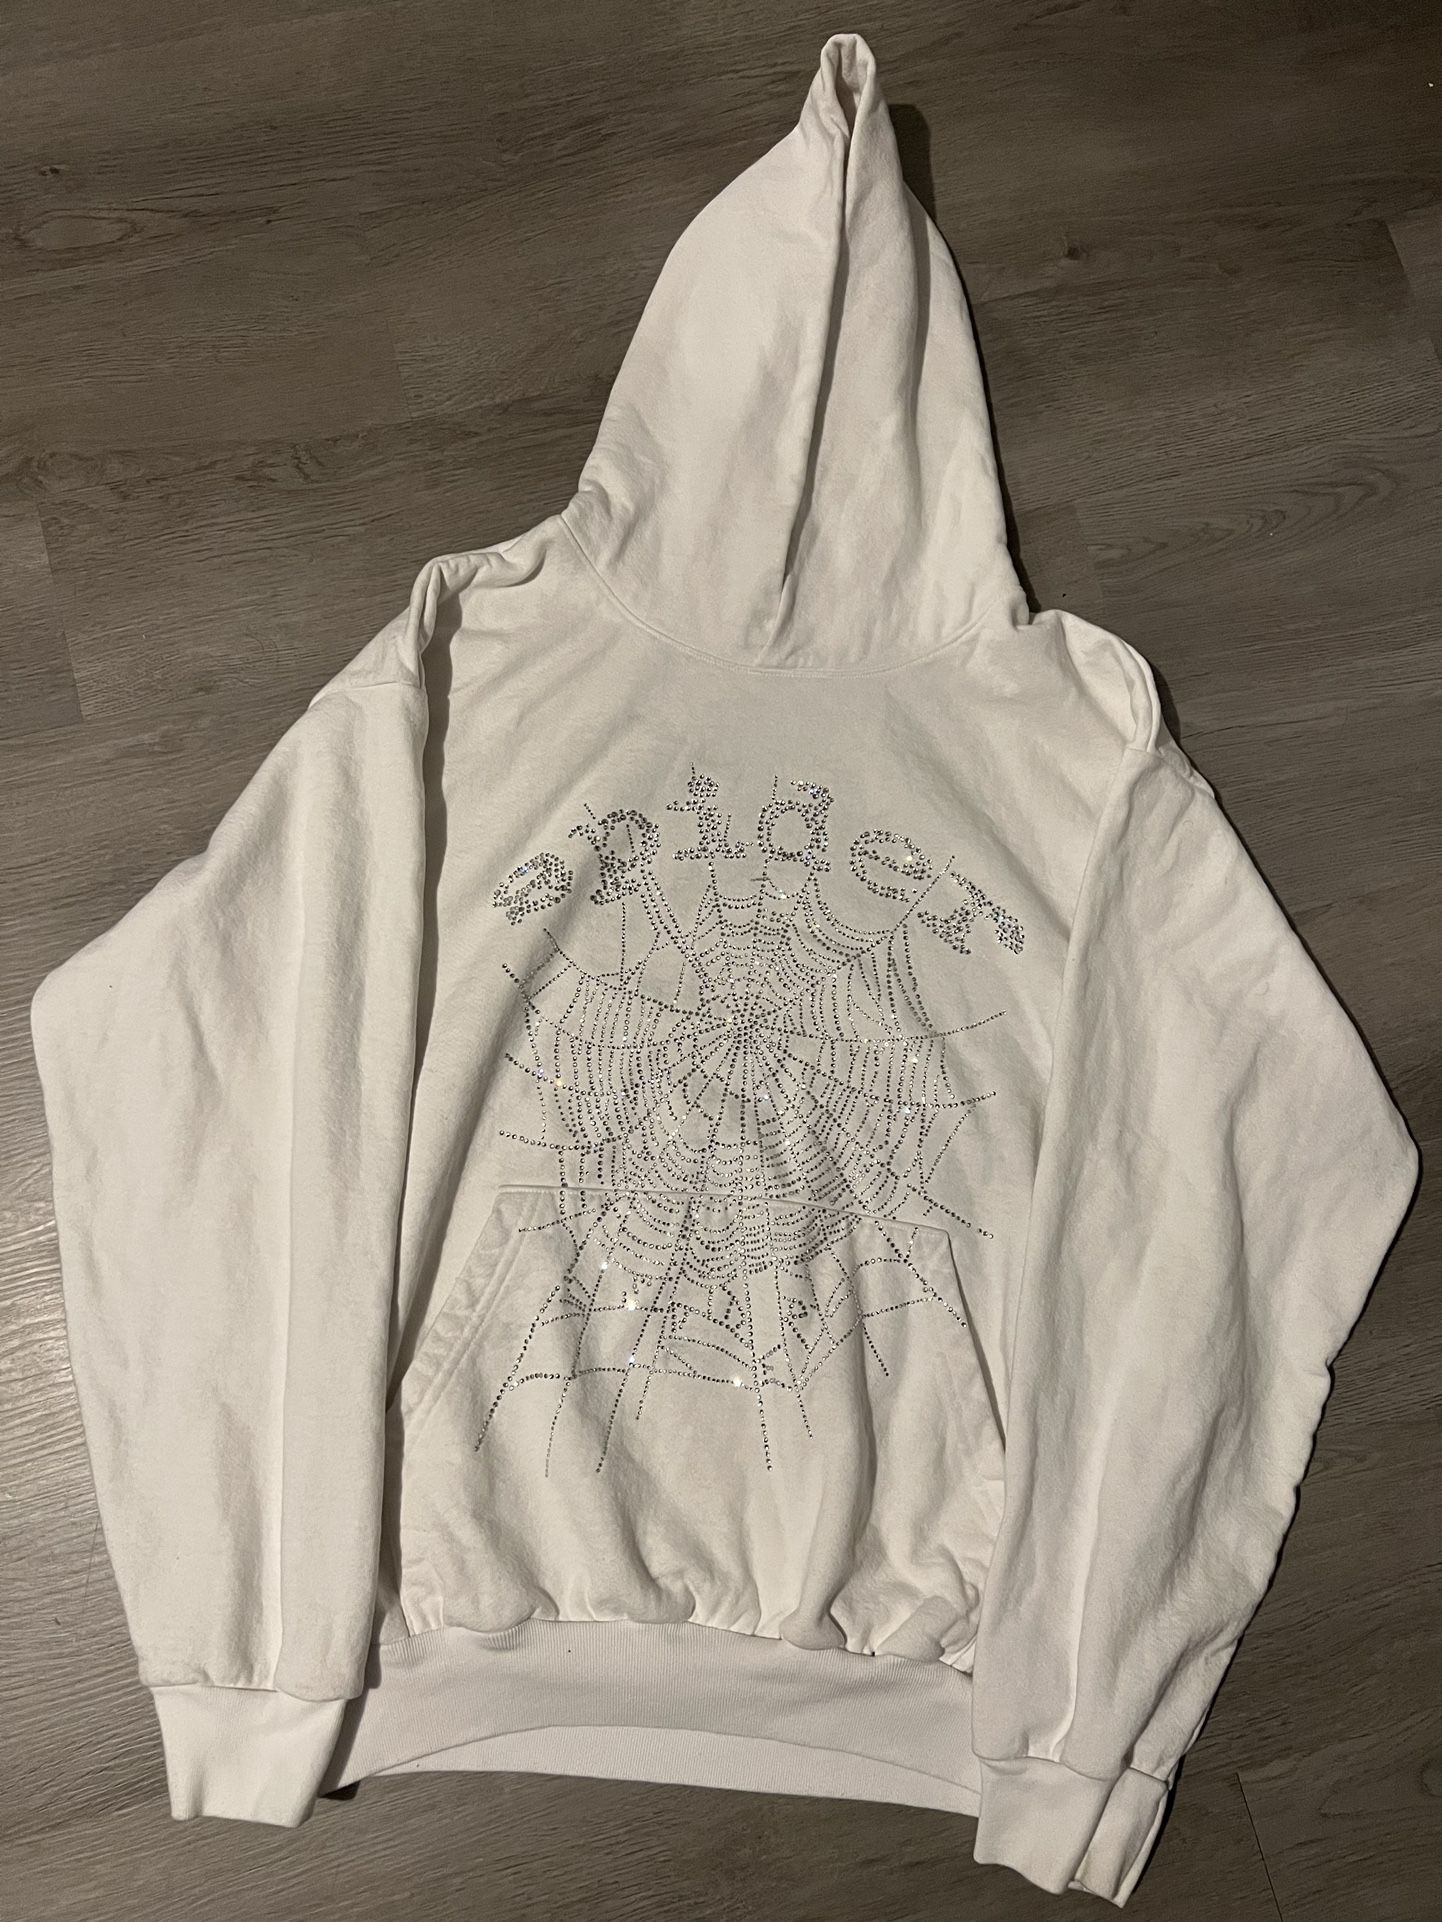 white rhinestone sp5der hoodie